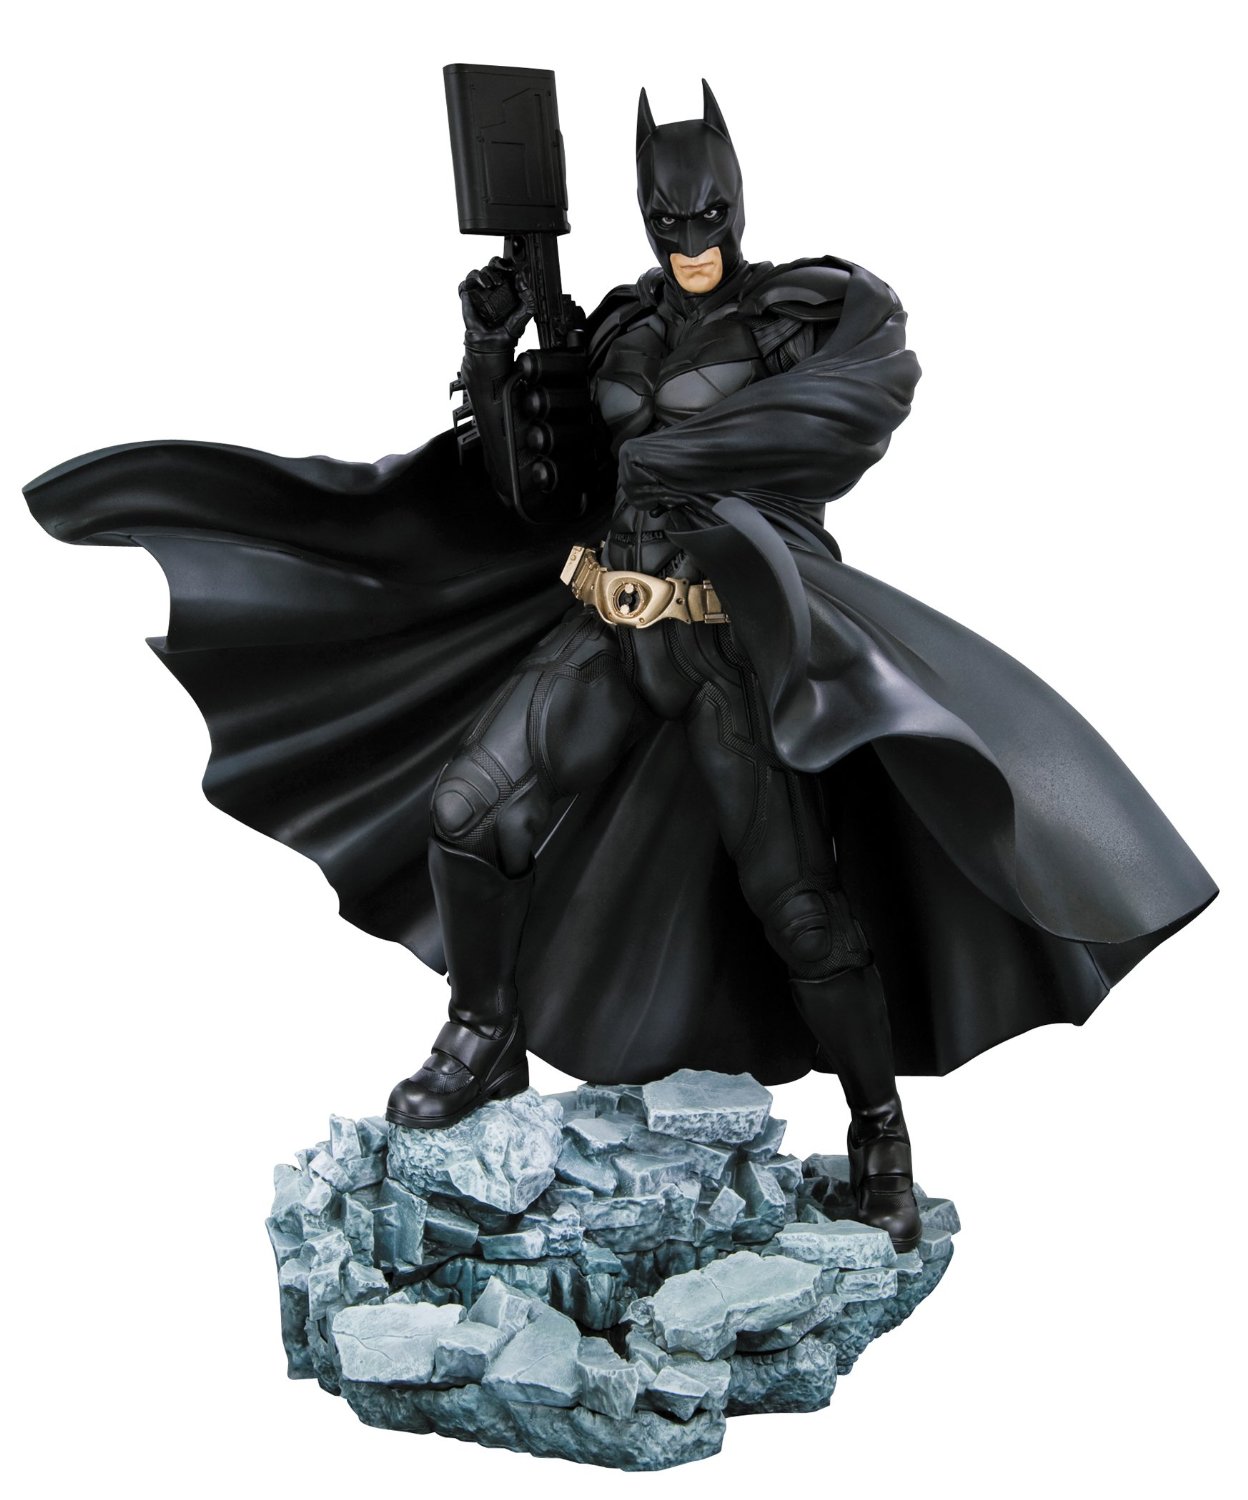 Batman: The Dark Knight Rises ArtFX Statue by Kotobukiya